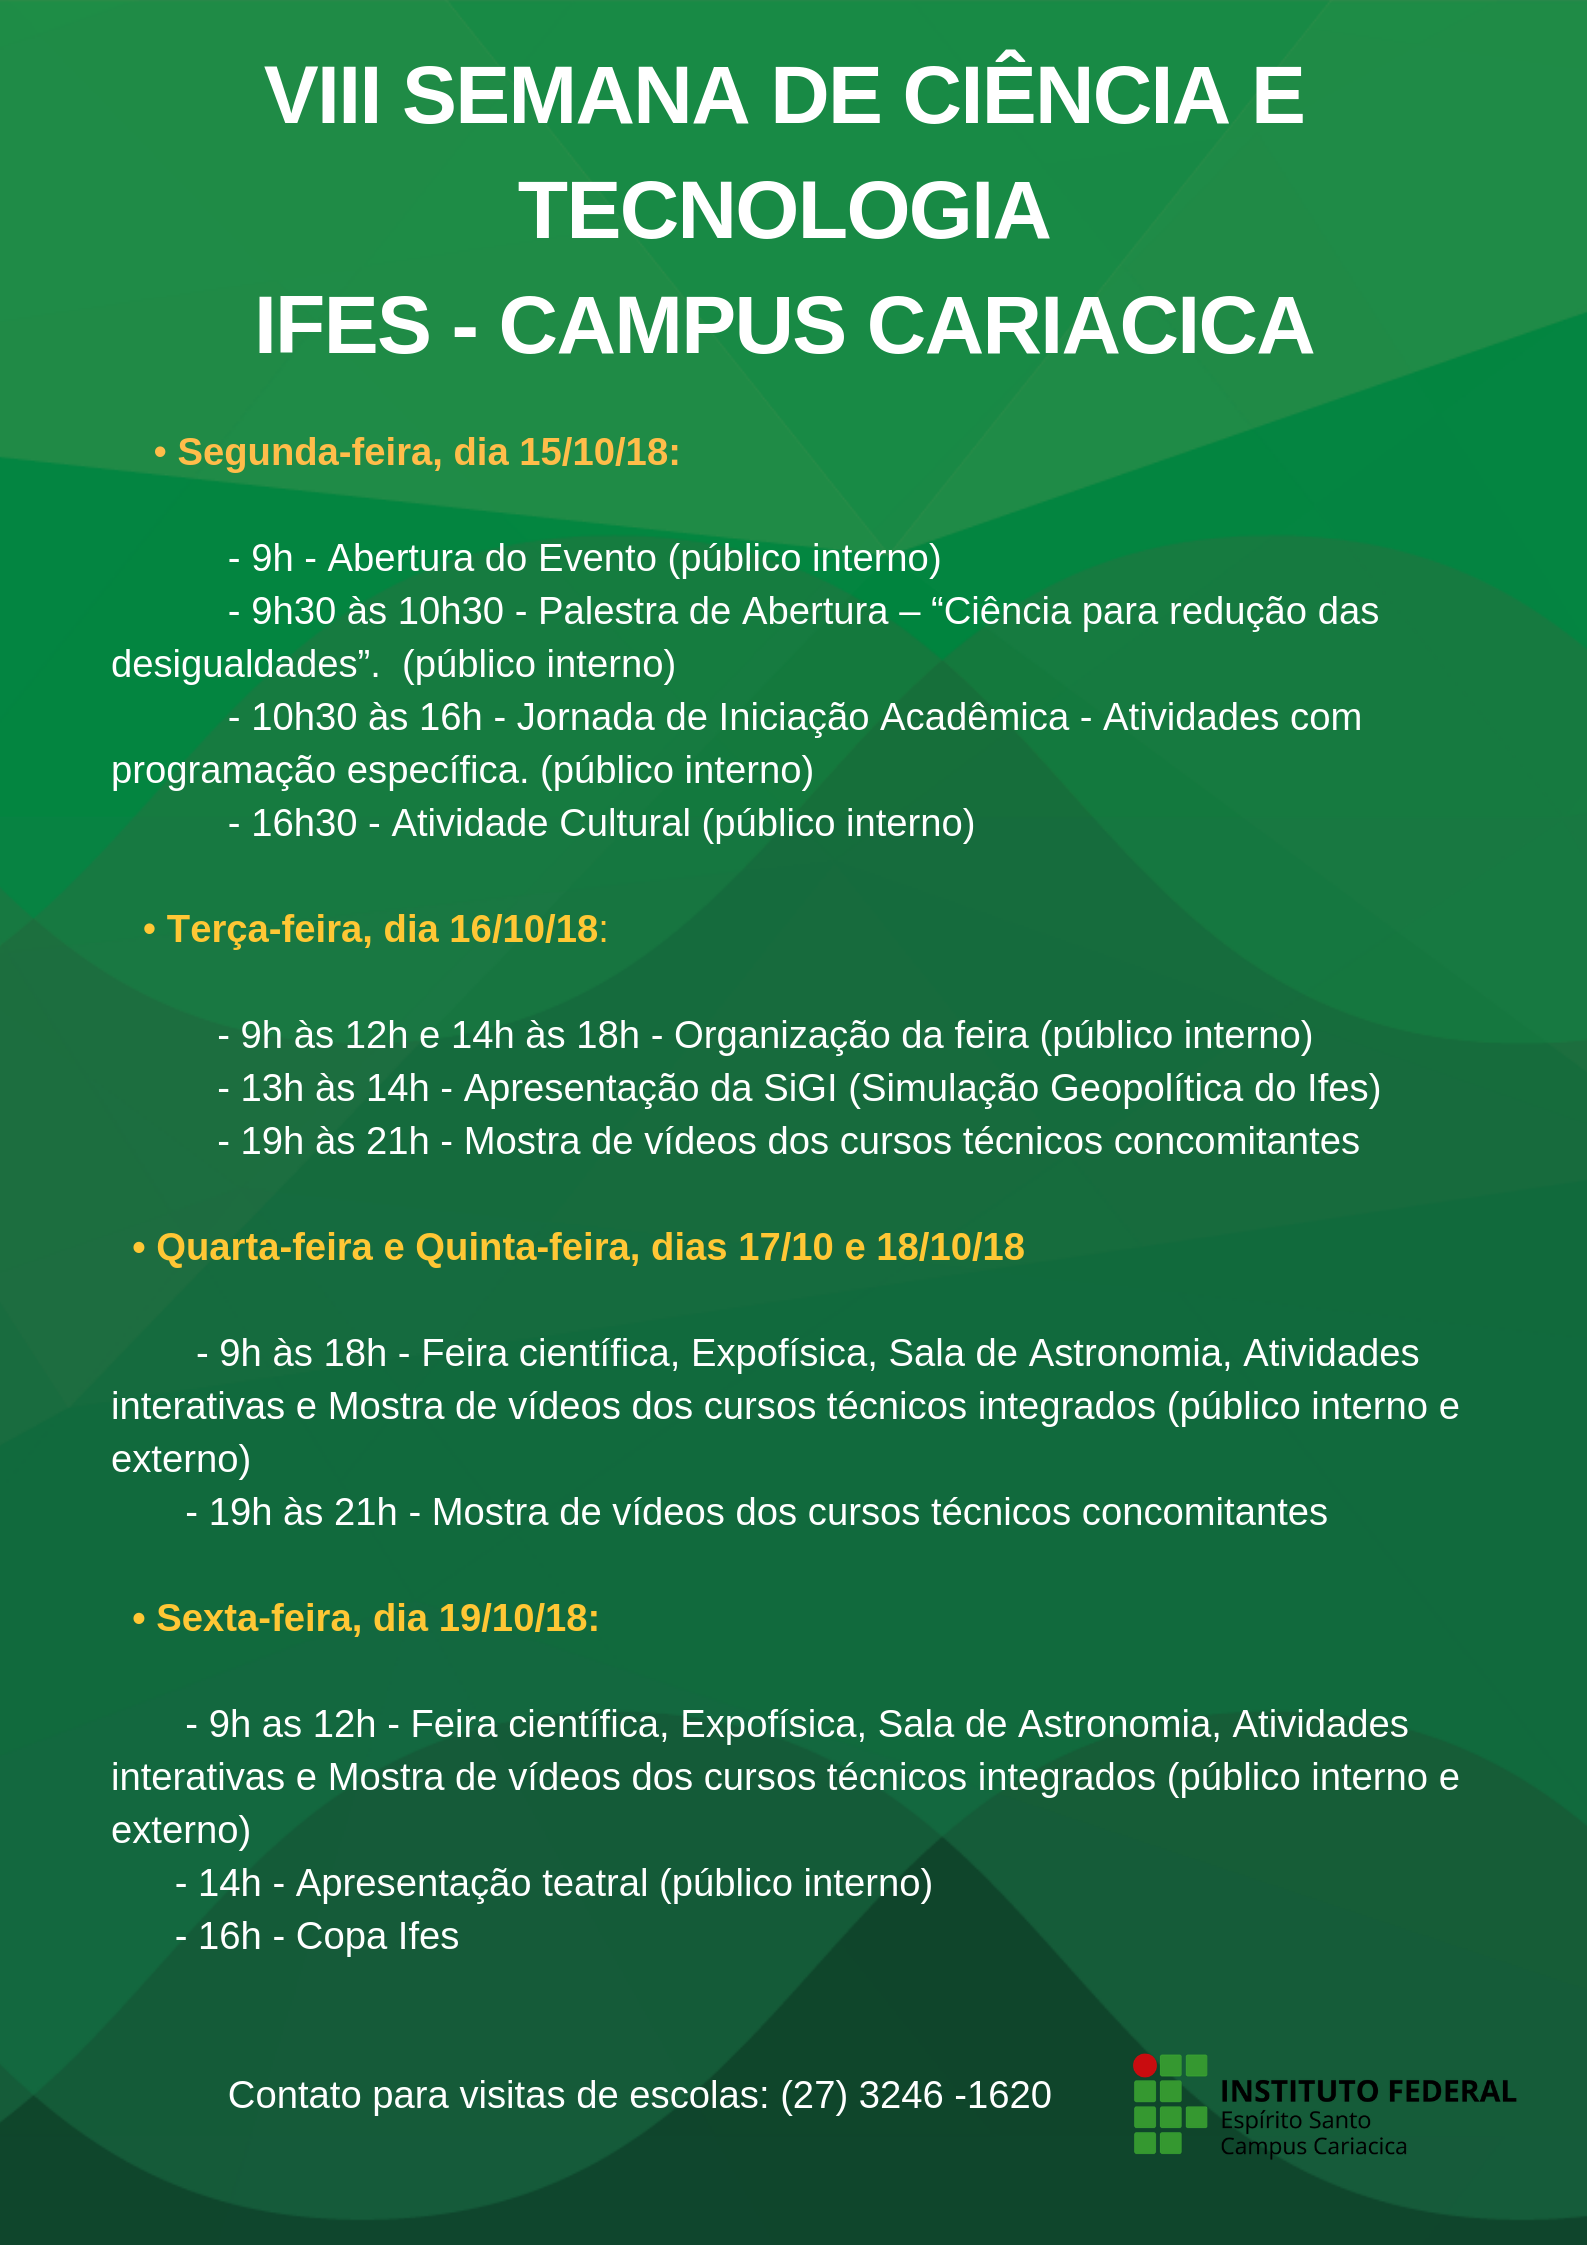 VIII SEMANA DE CIÊNCIA E TECNOLOGIA DO IFES CAMPUS CARIACICA prog